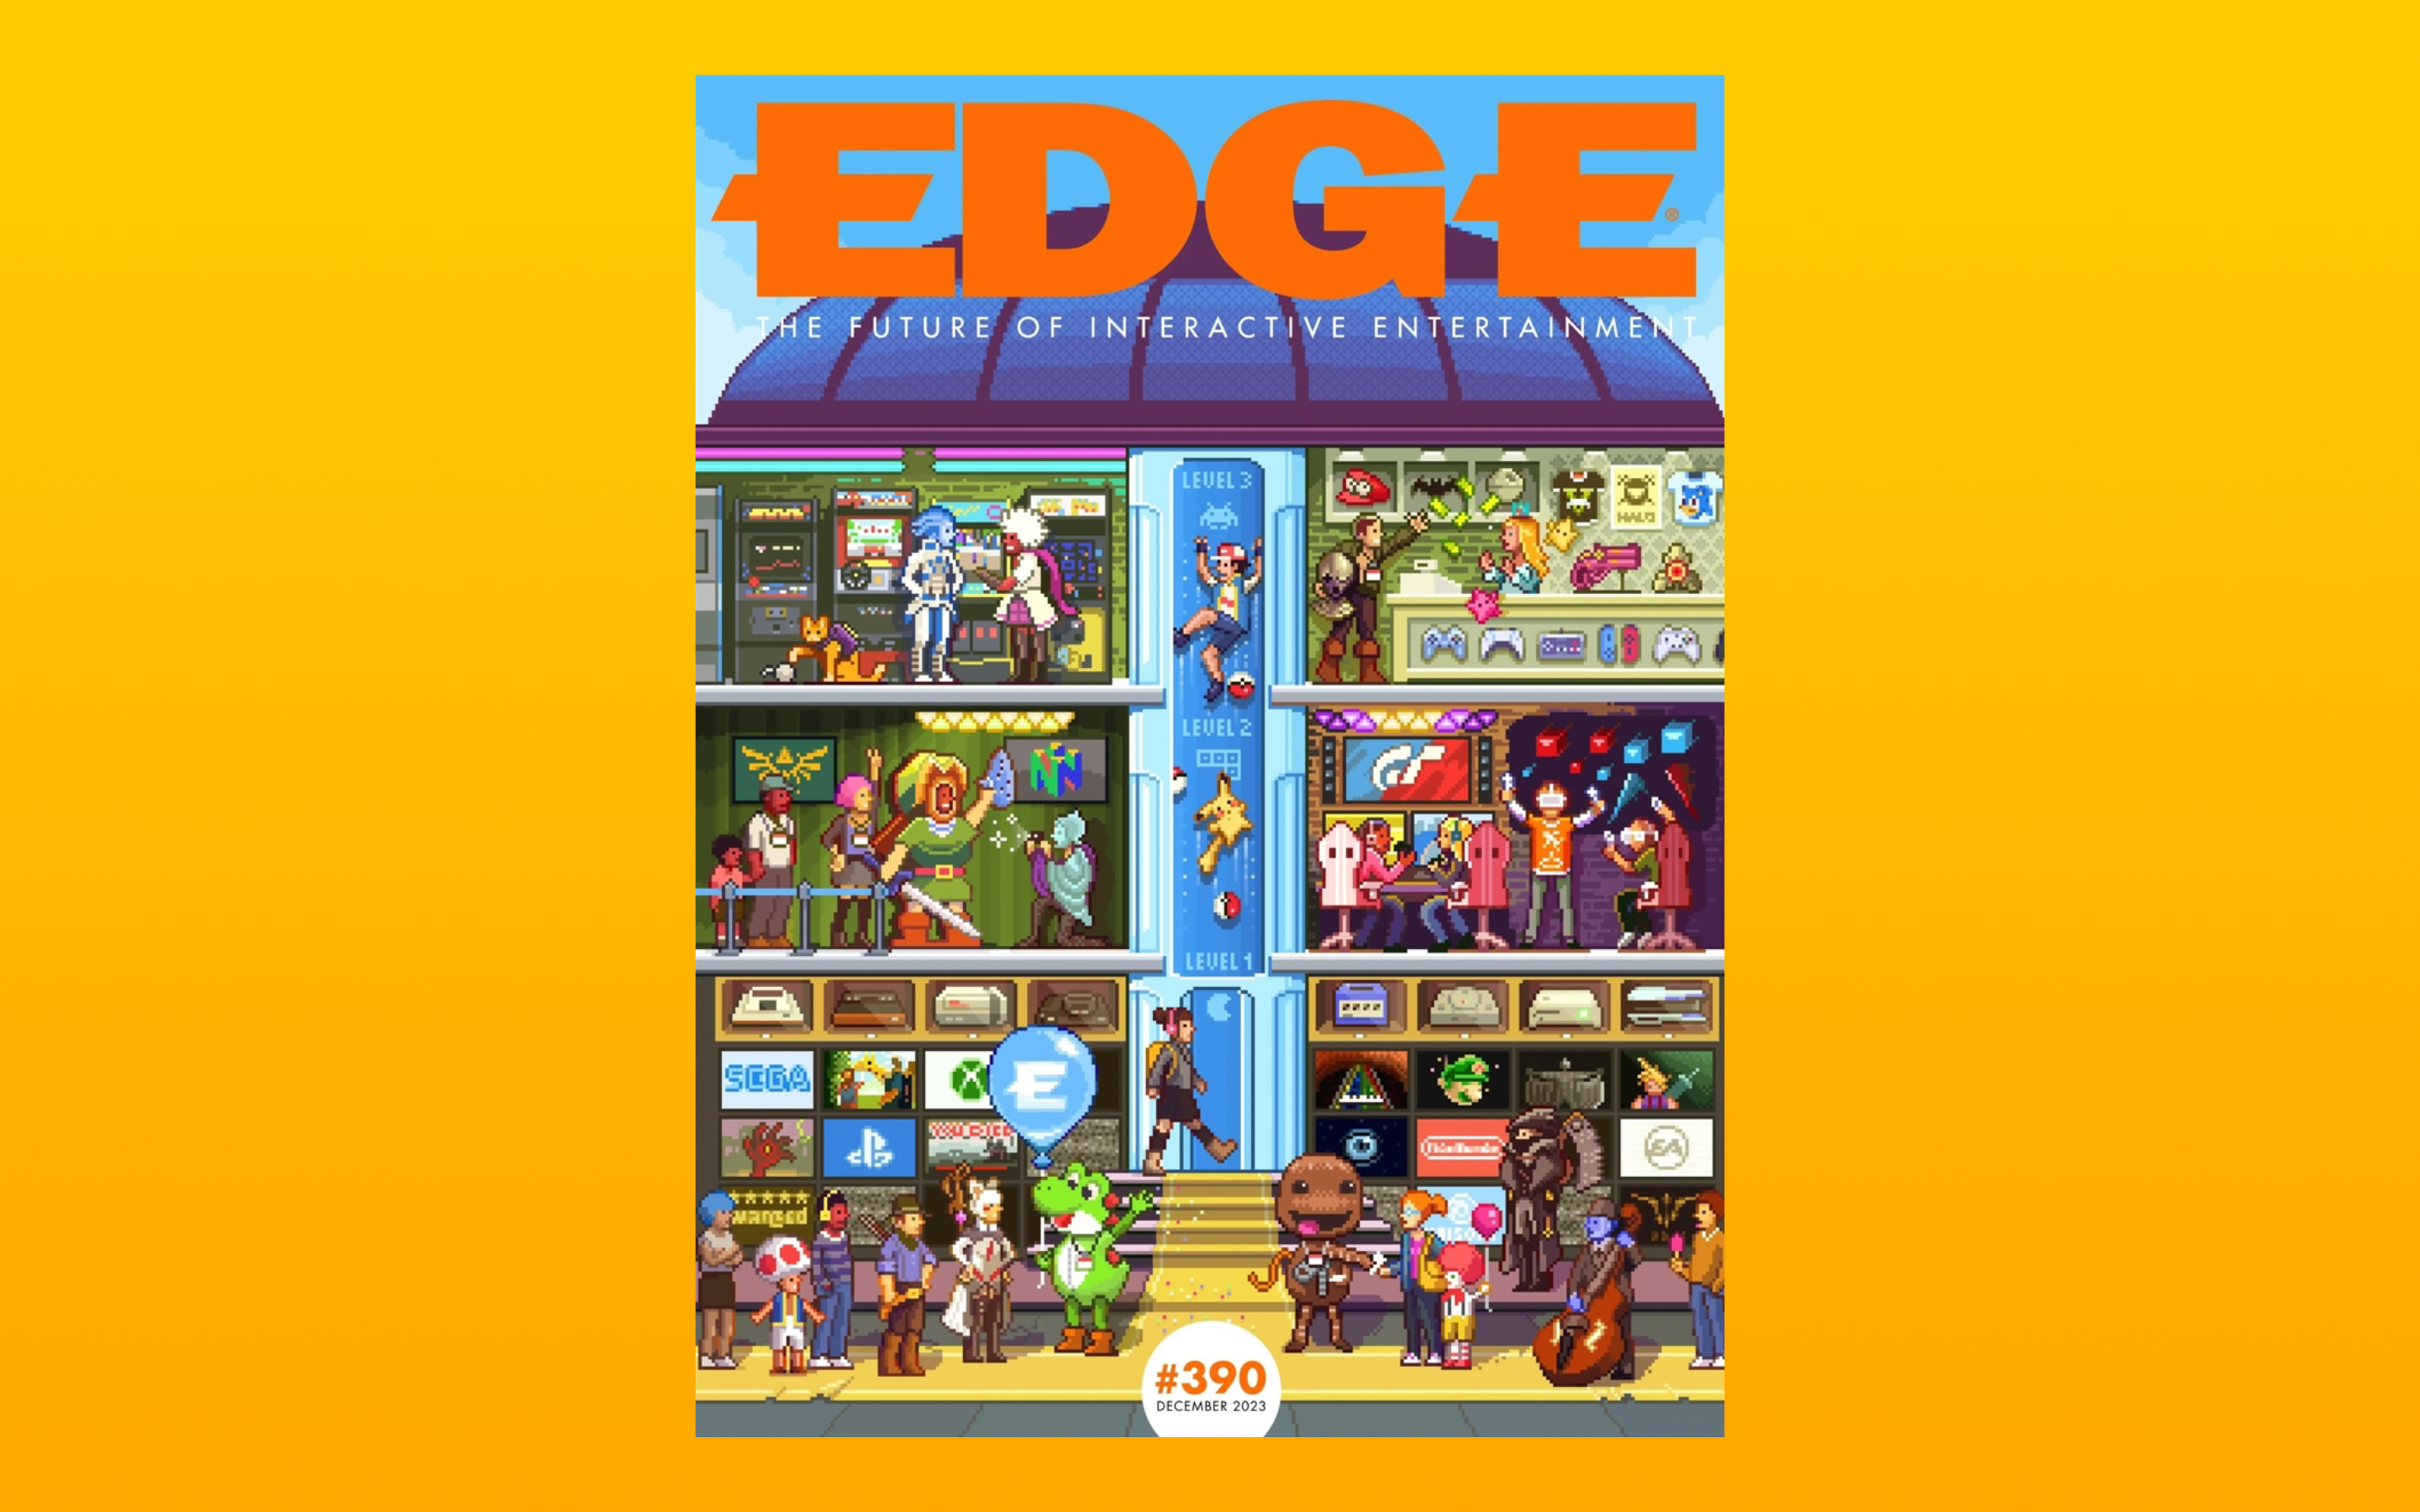 Журнал Edge назвал 100 величайших видеоигр в истории